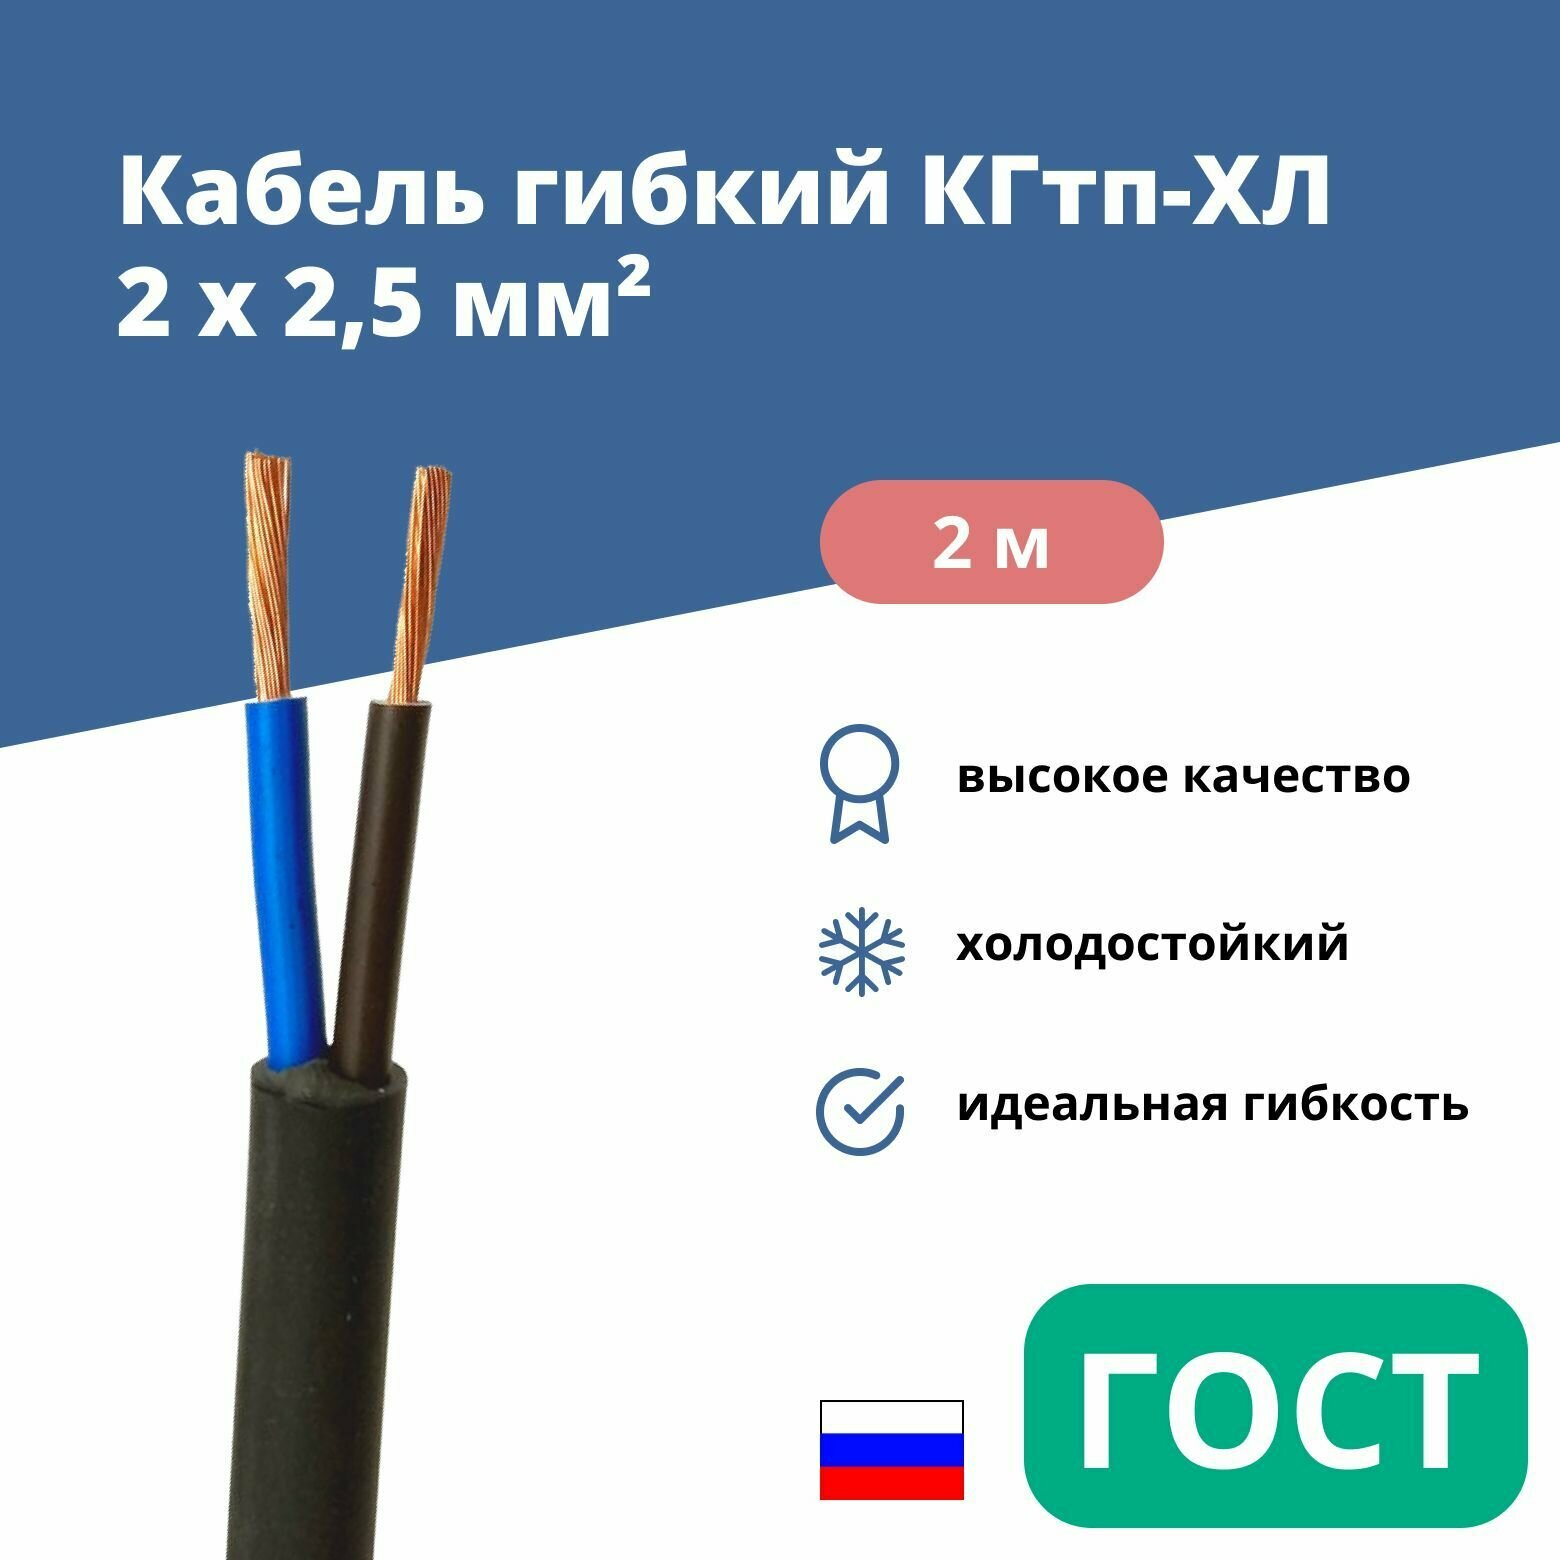 Силовой сварочный кабель гибкий кгтп-хл 2х2,5 уп. 2м.